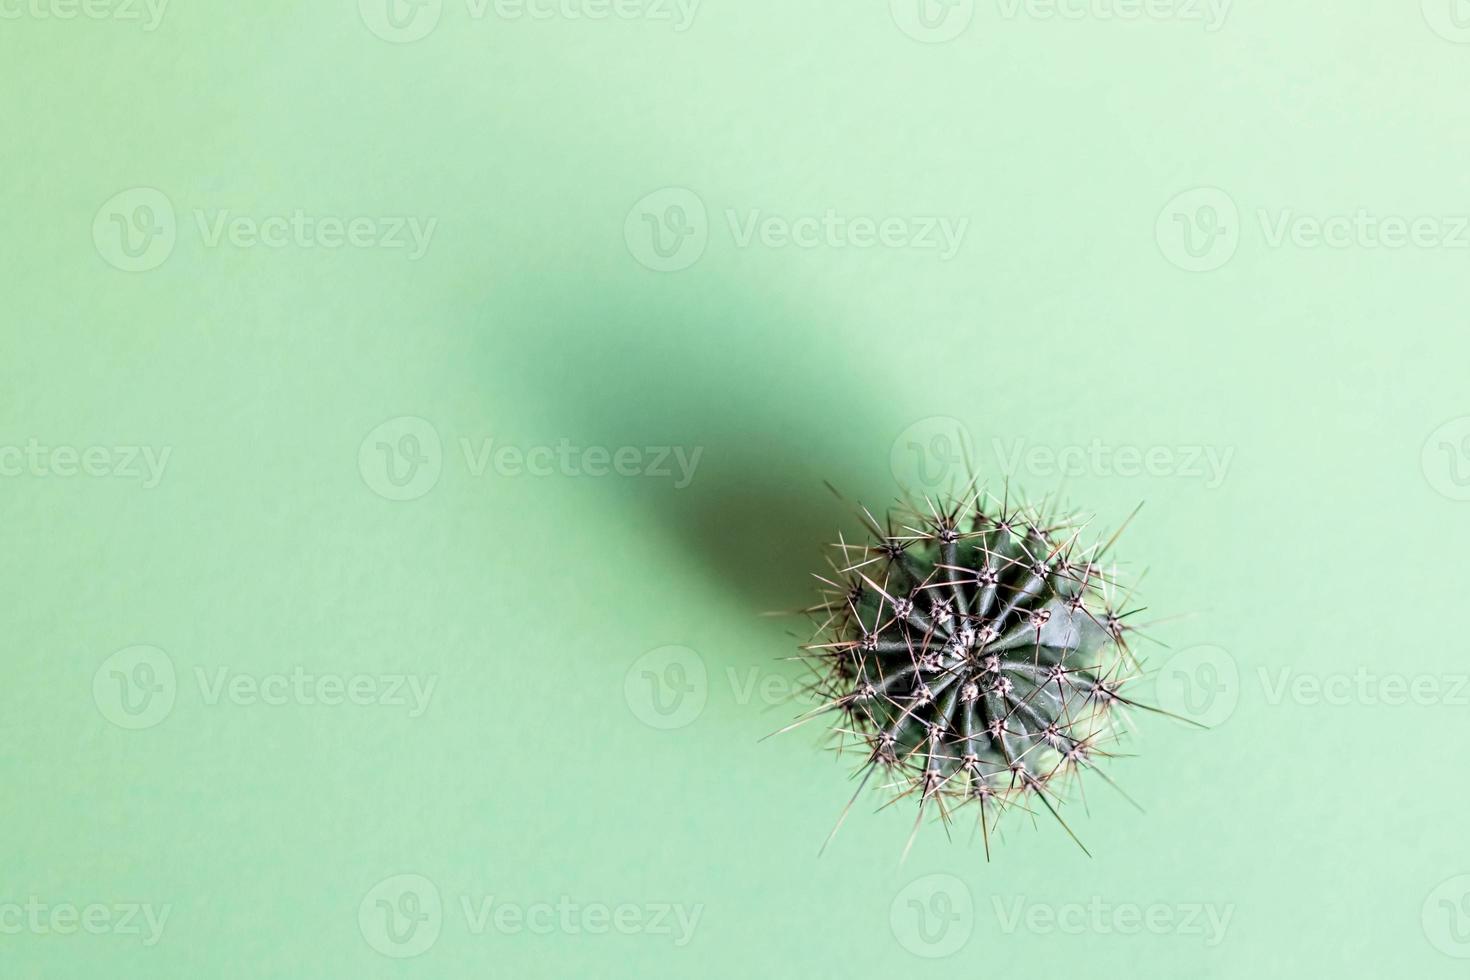 fond d'un cactus sur fond vert. texture végétale avec des épines photo